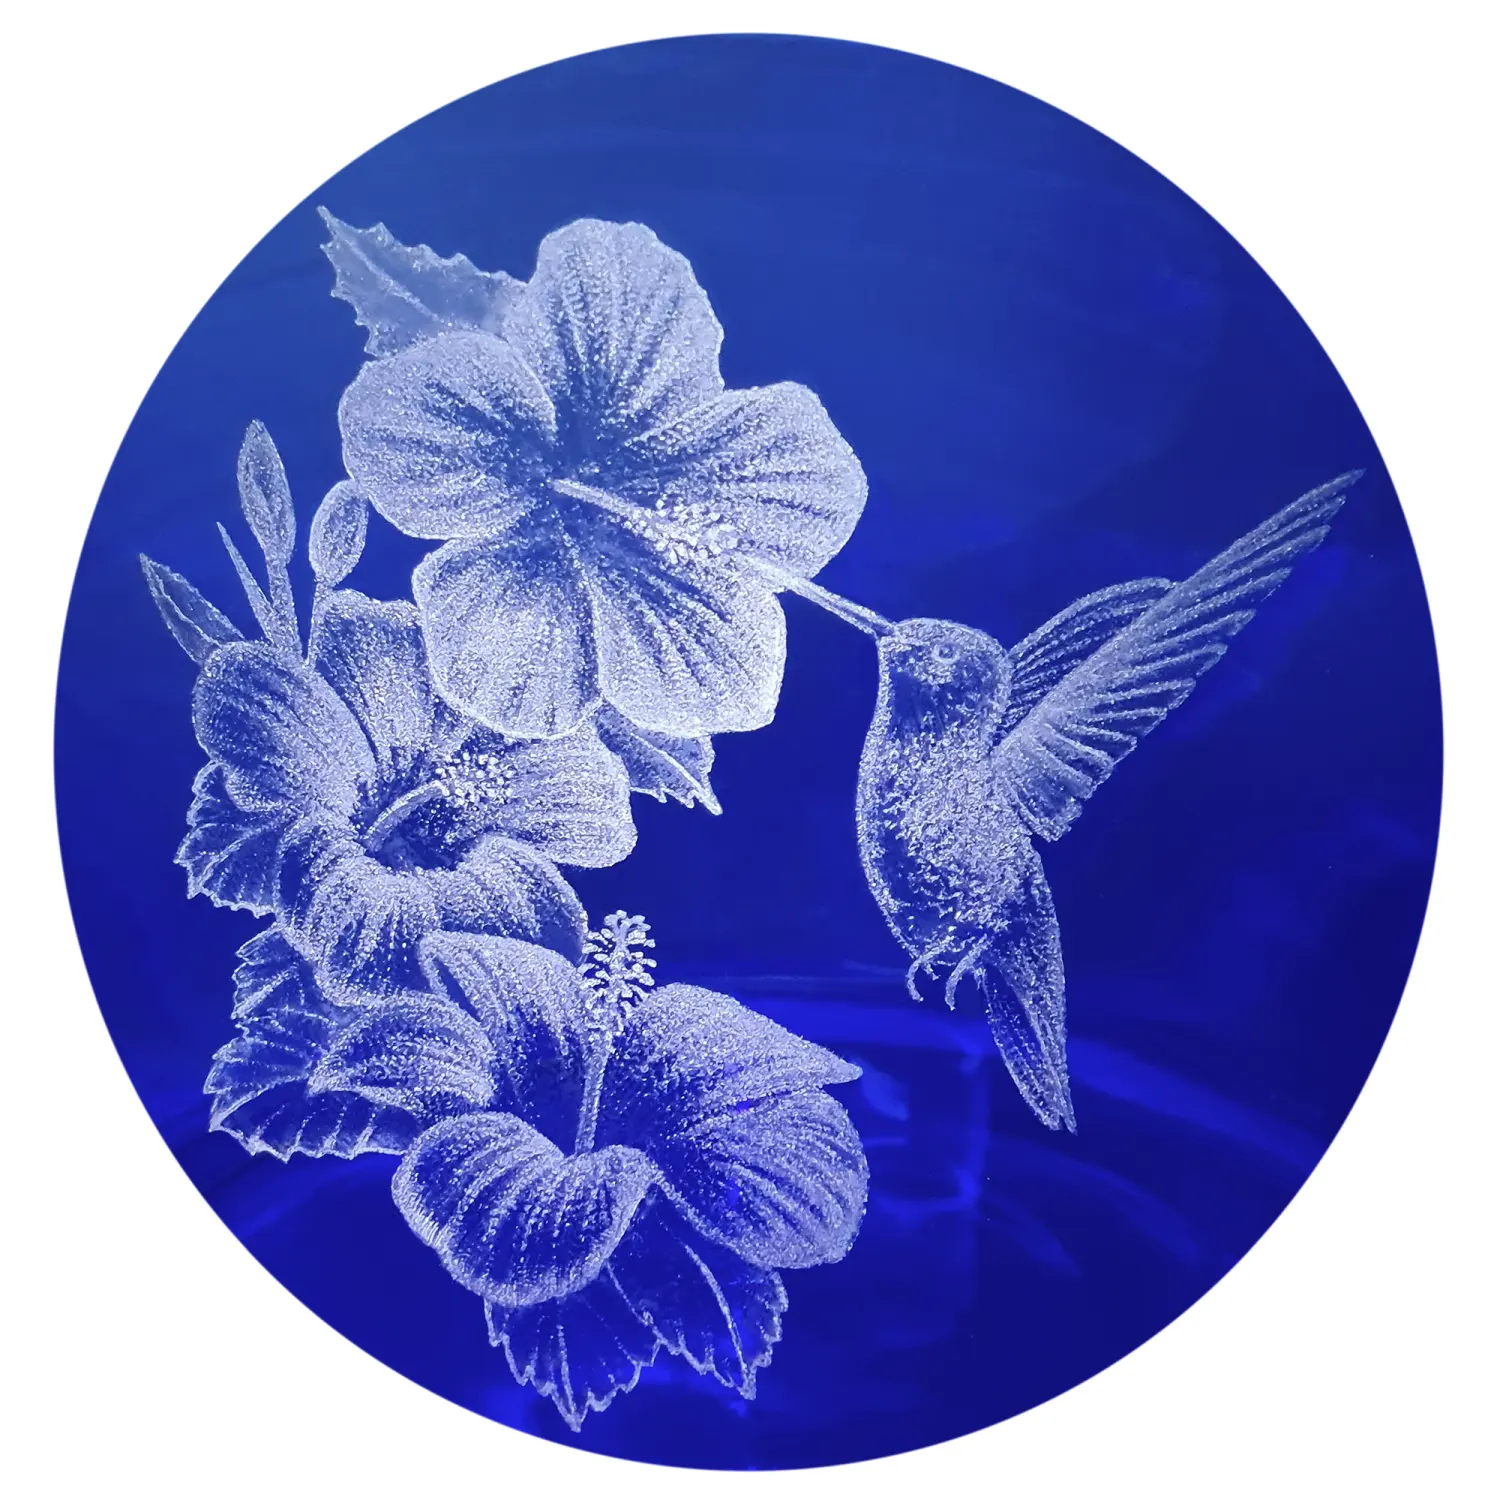 Vorratstank für einen Acala Wasserfilter Mini mit einer Handgravur. Die Gravur zeigt, auf blauem Glas, einen Kolibri der an einer offenen Blüte trinkt. Neben der Blüte sind noch zwei weitere ganz aufgeblühte Blüten. Nahaufnahme der Gravur